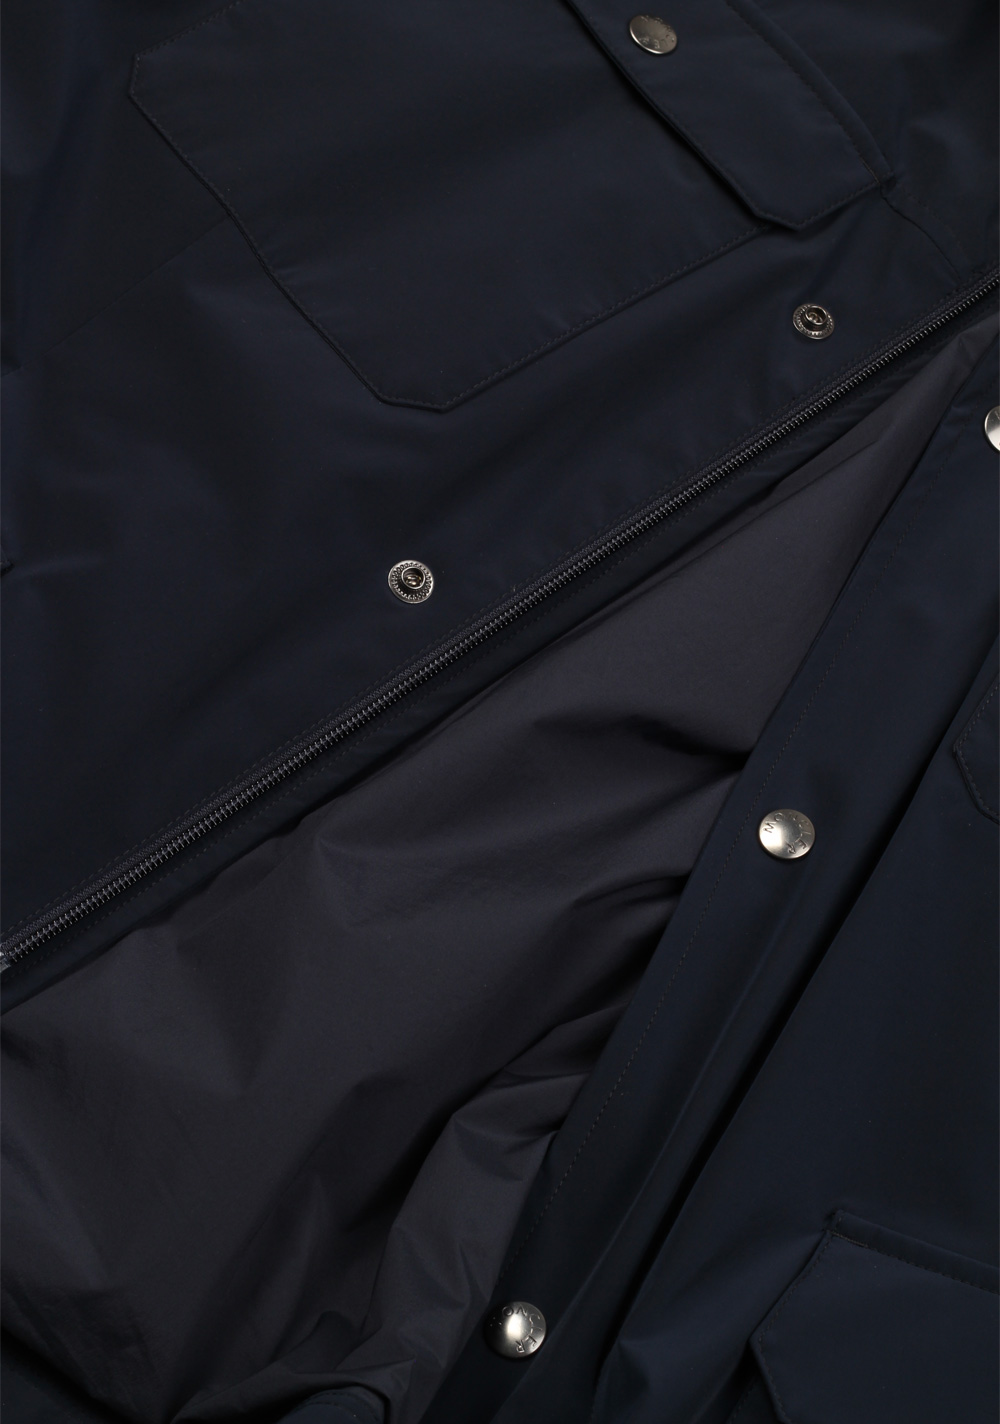 Moncler Blue Curan Field Jacket Coat Size 4 / L / 52 / 42 U.S. | Costume Limité